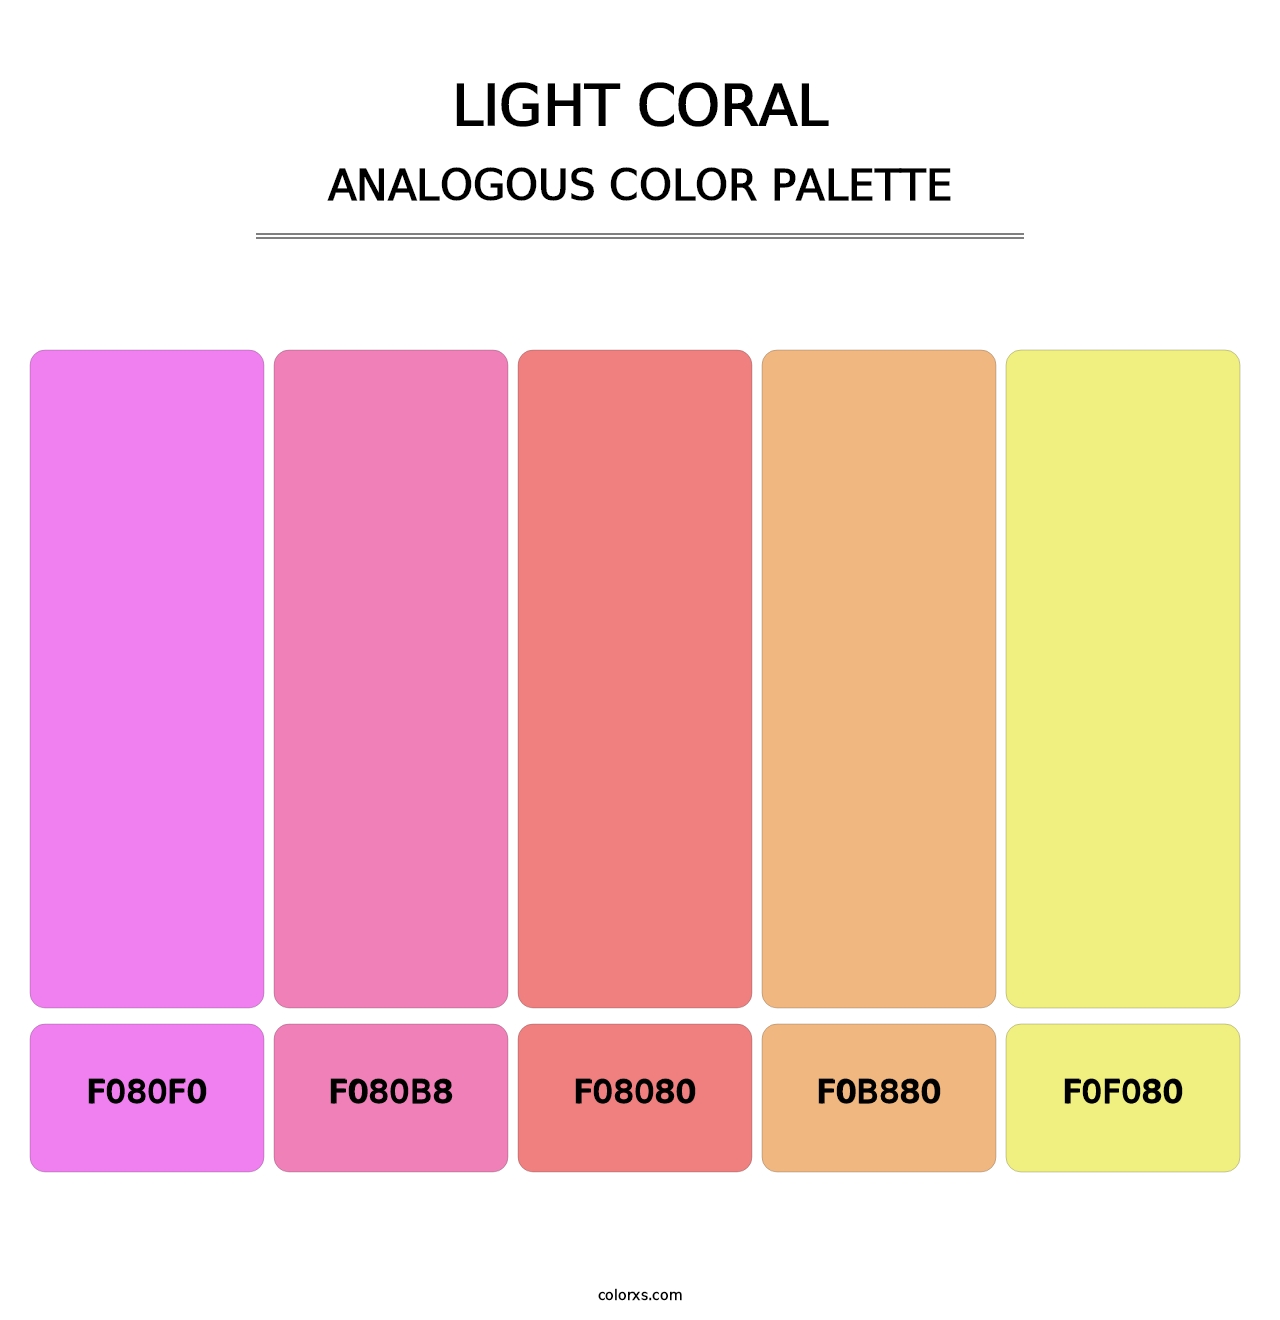 Light Coral - Analogous Color Palette